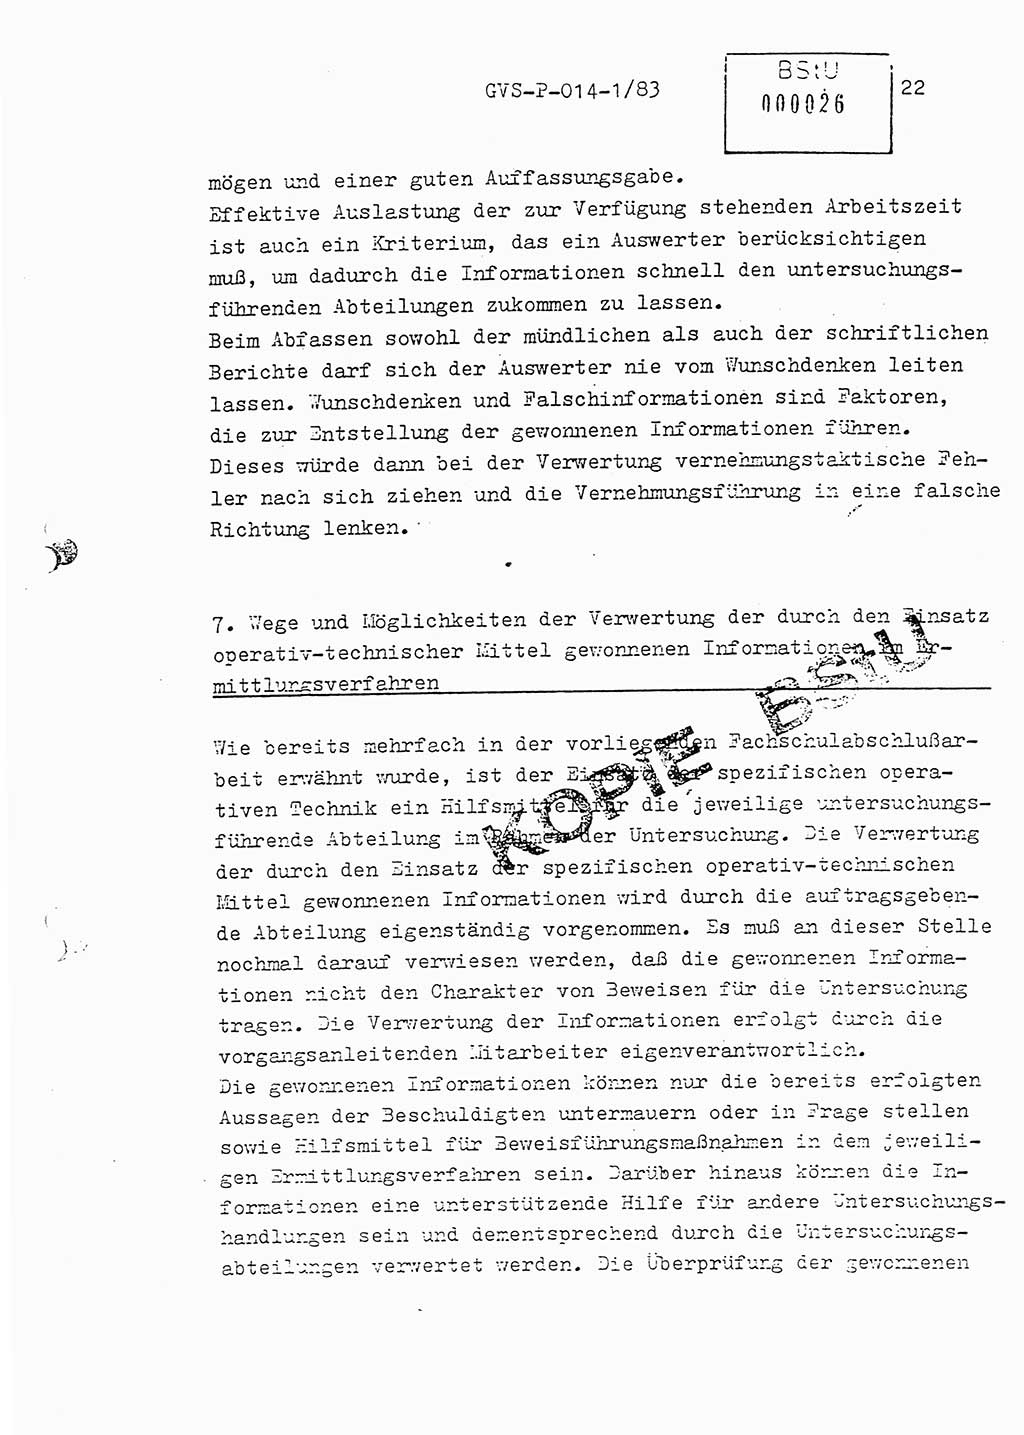 Fachschulabschlußarbeit Leutnant Dirk Autentrieb (HA Ⅸ/AKG), Ministerium für Staatssicherheit (MfS) [Deutsche Demokratische Republik (DDR)], Hauptabteilung (HA) Ⅸ, Geheime Verschlußsache (GVS) P-014-1/83, Berlin 1983, Blatt 22 (FS-Abschl.-Arb. MfS DDR HA Ⅸ GVS P-014-1/83 1983, Bl. 22)